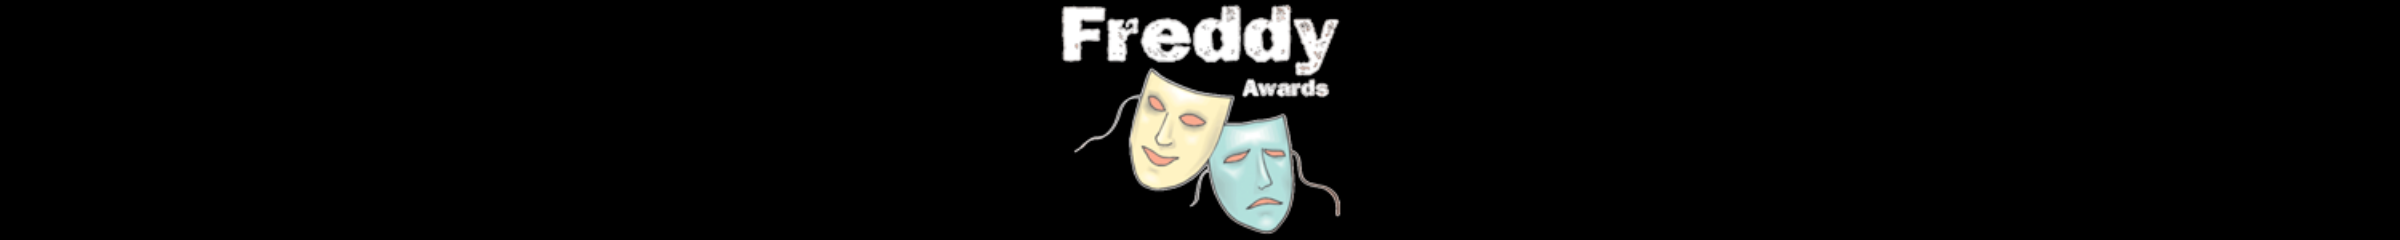 Freddy Awards logo